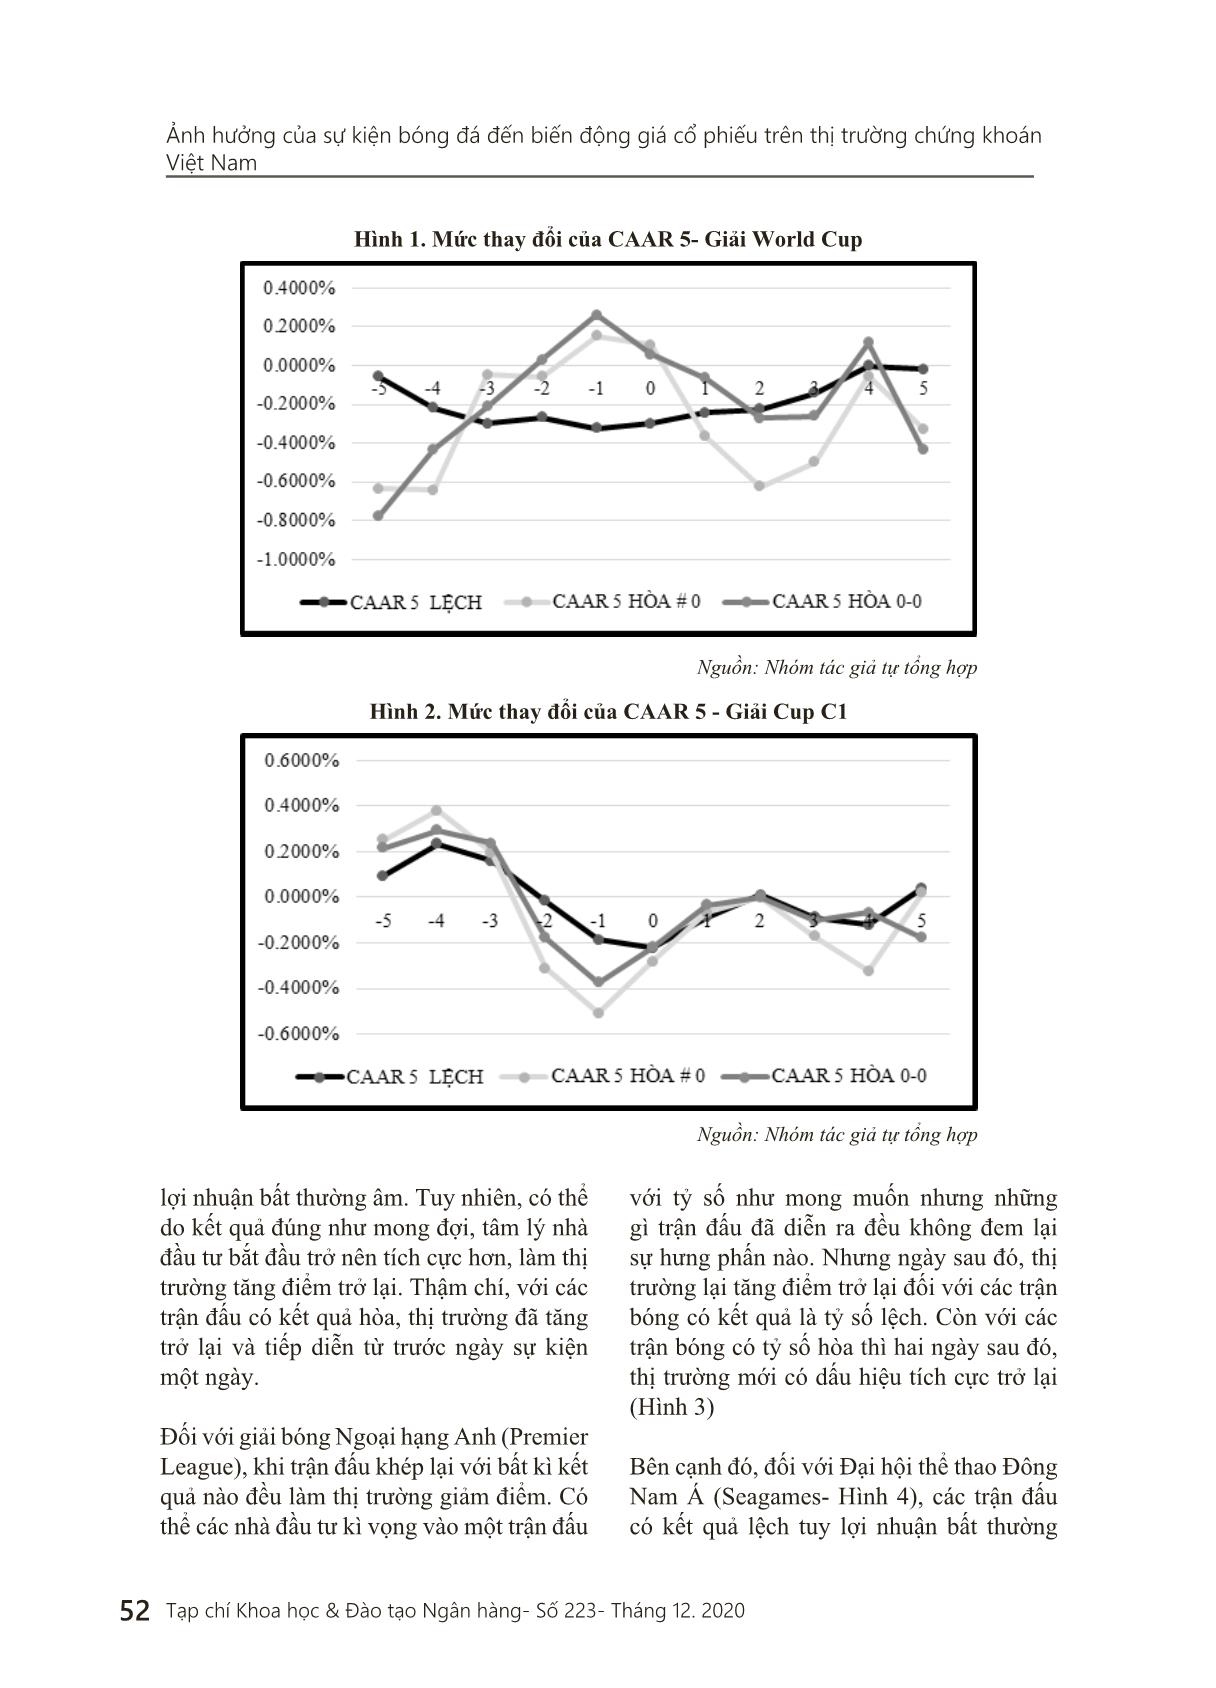 Ảnh hưởng của sự kiện bóng đá đến biến động giá cổ phiếu trên thị trường chứng khoán Việt Nam trang 7